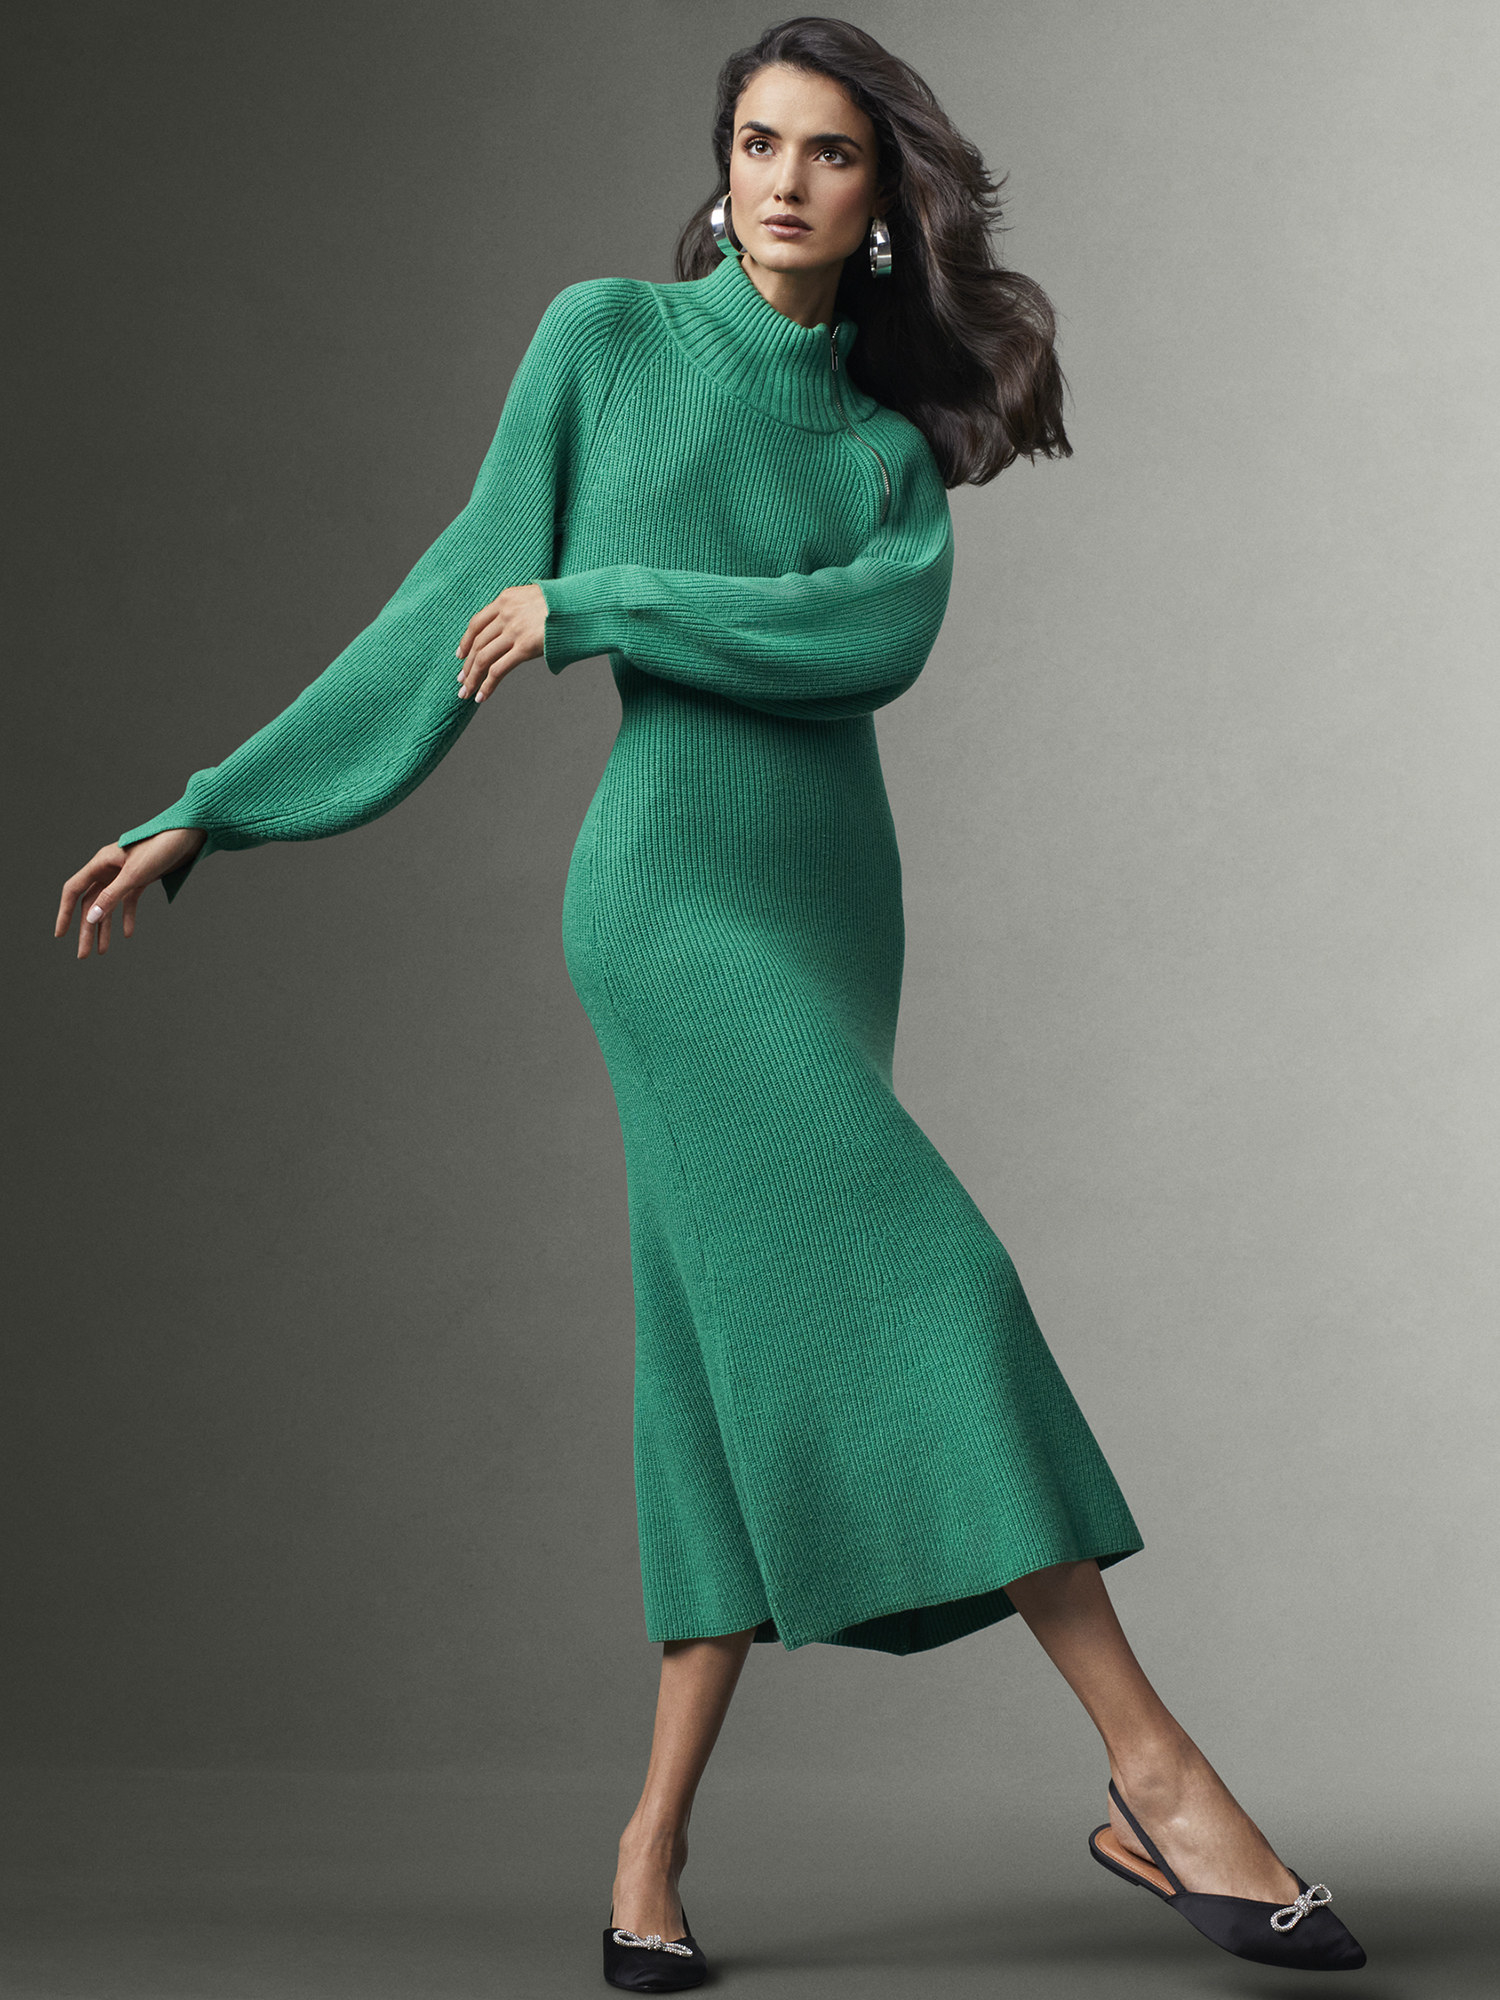 model wearing the dress in green